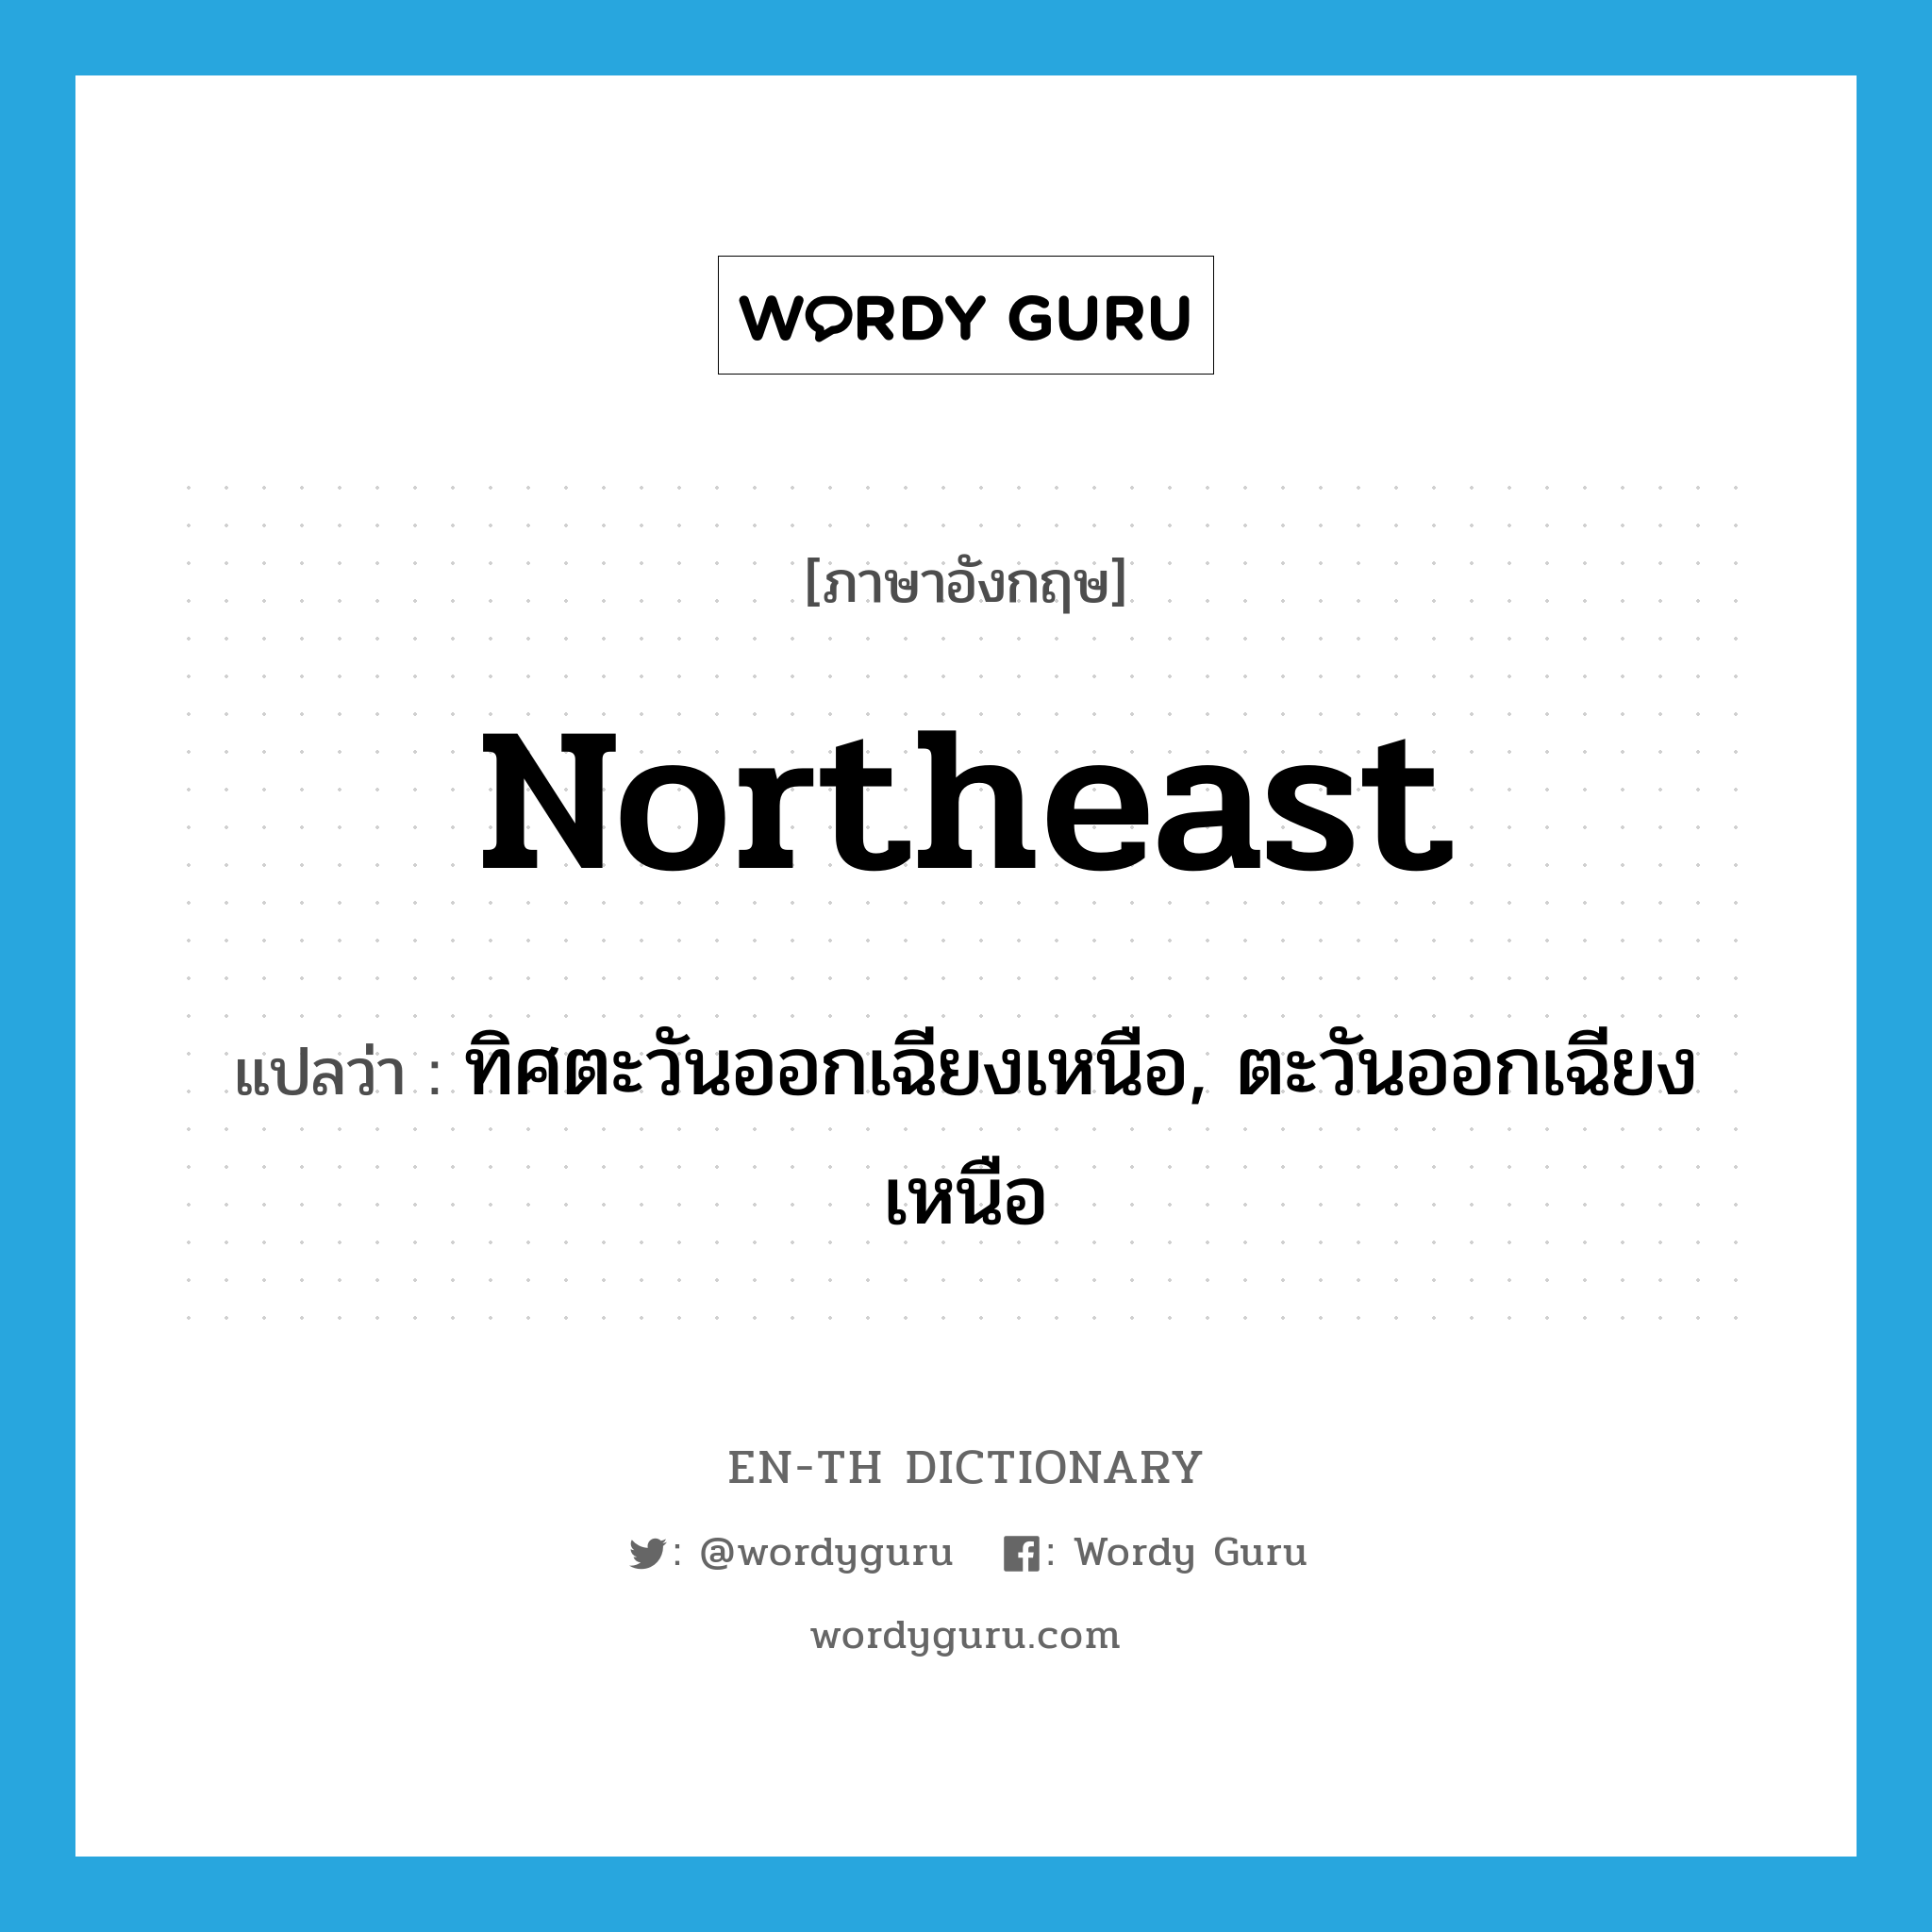 ทิศตะวันออกเฉียงเหนือ, ตะวันออกเฉียงเหนือ ภาษาอังกฤษ?, คำศัพท์ภาษาอังกฤษ ทิศตะวันออกเฉียงเหนือ, ตะวันออกเฉียงเหนือ แปลว่า northeast ประเภท N หมวด N